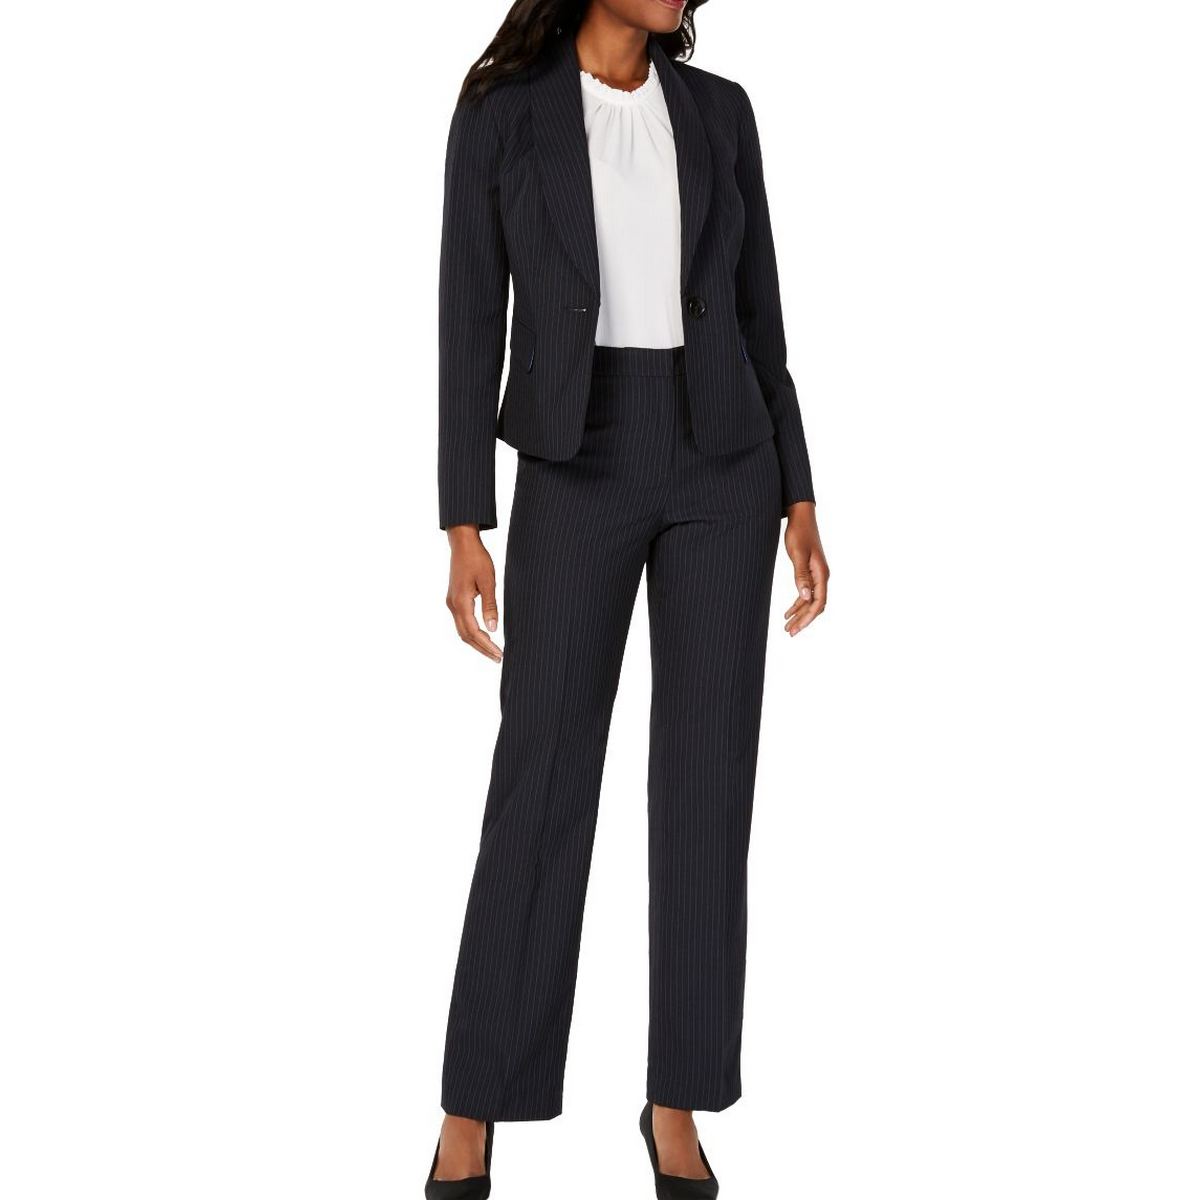 Women's Suits & Sets - Kmart